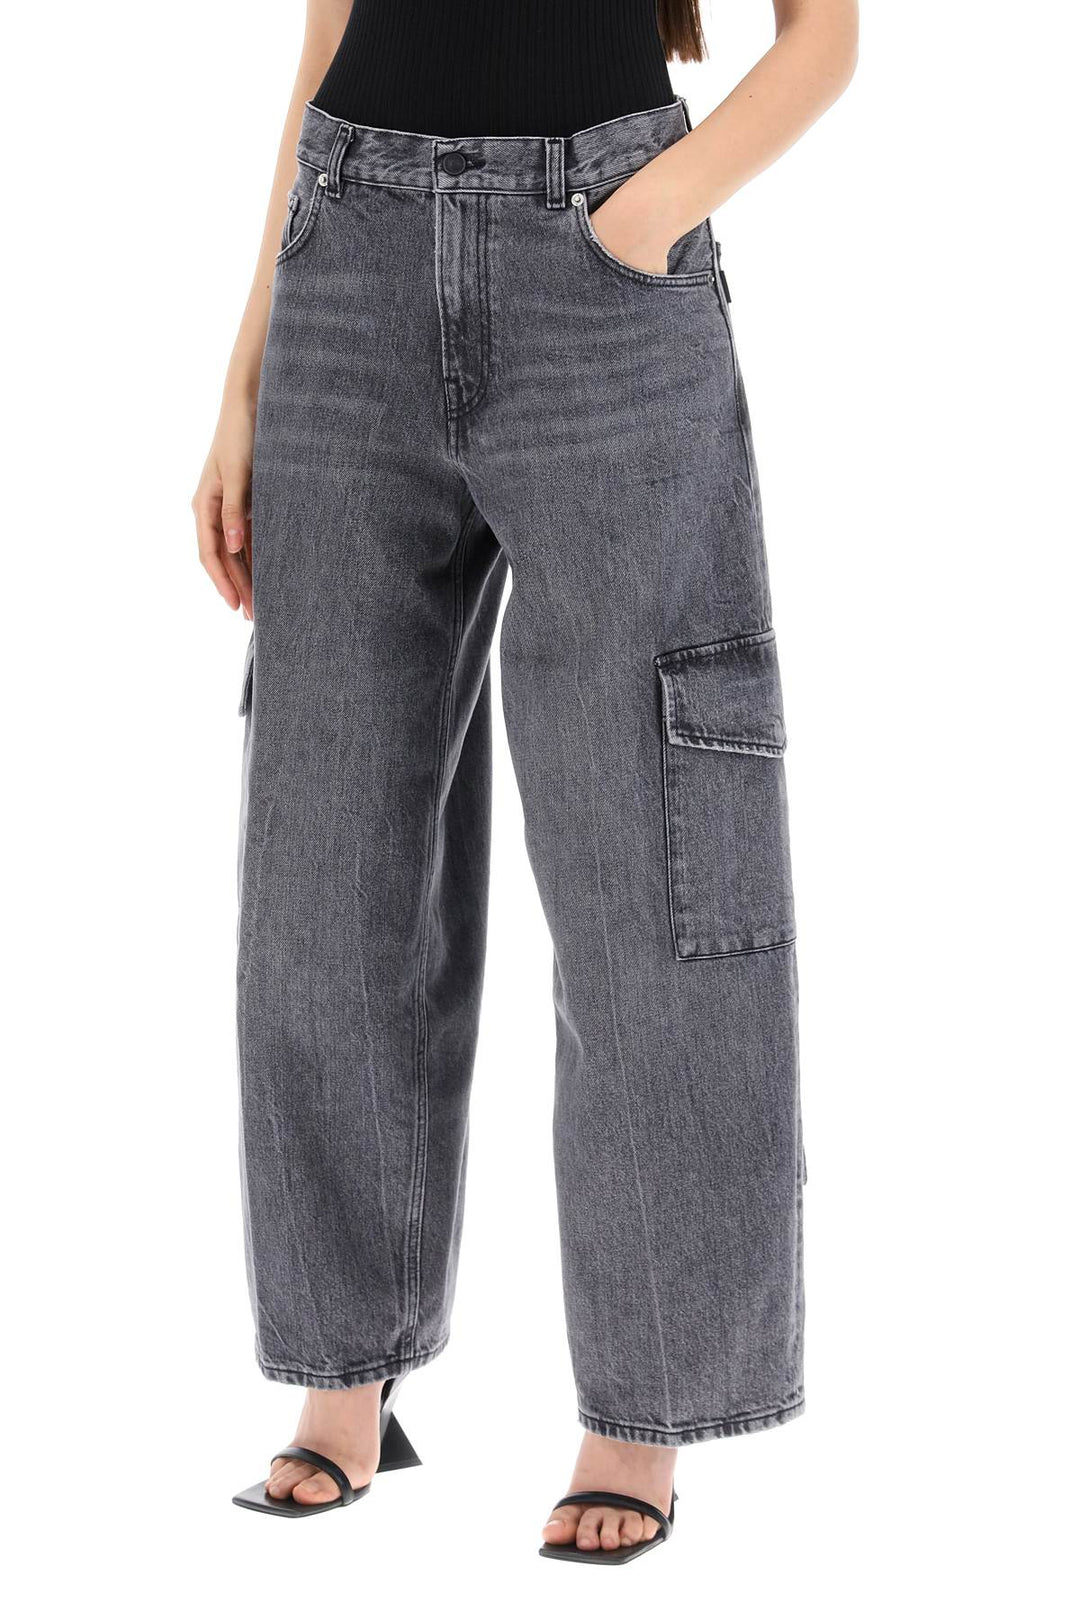 Haikure Bethany Cargo Jeans   Grey